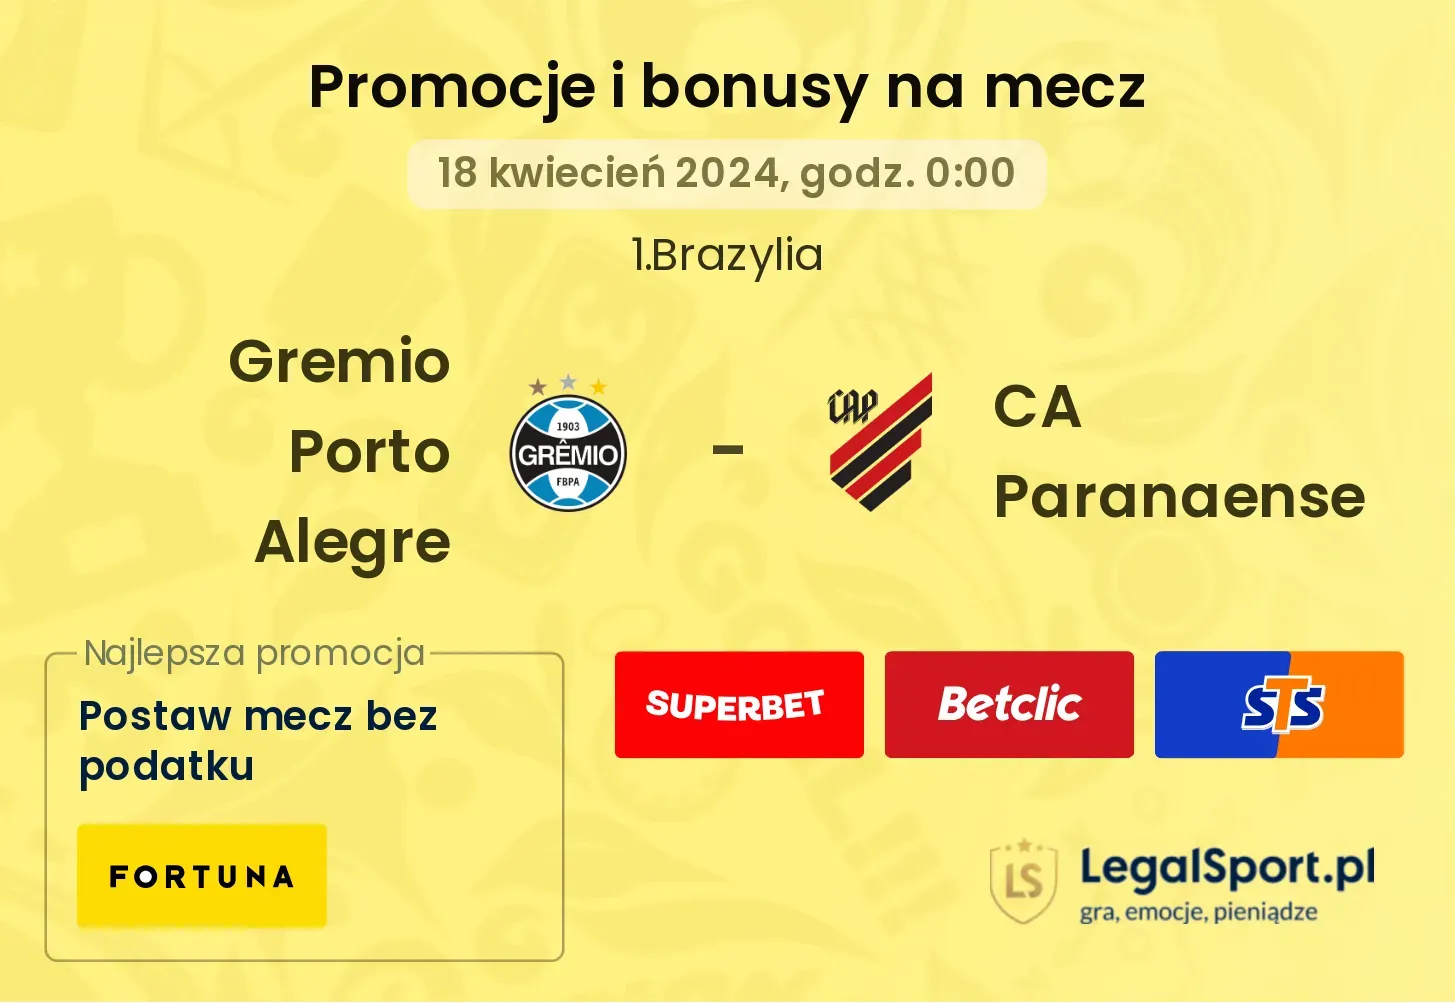 Gremio Porto Alegre - CA Paranaense promocje bonusy na mecz